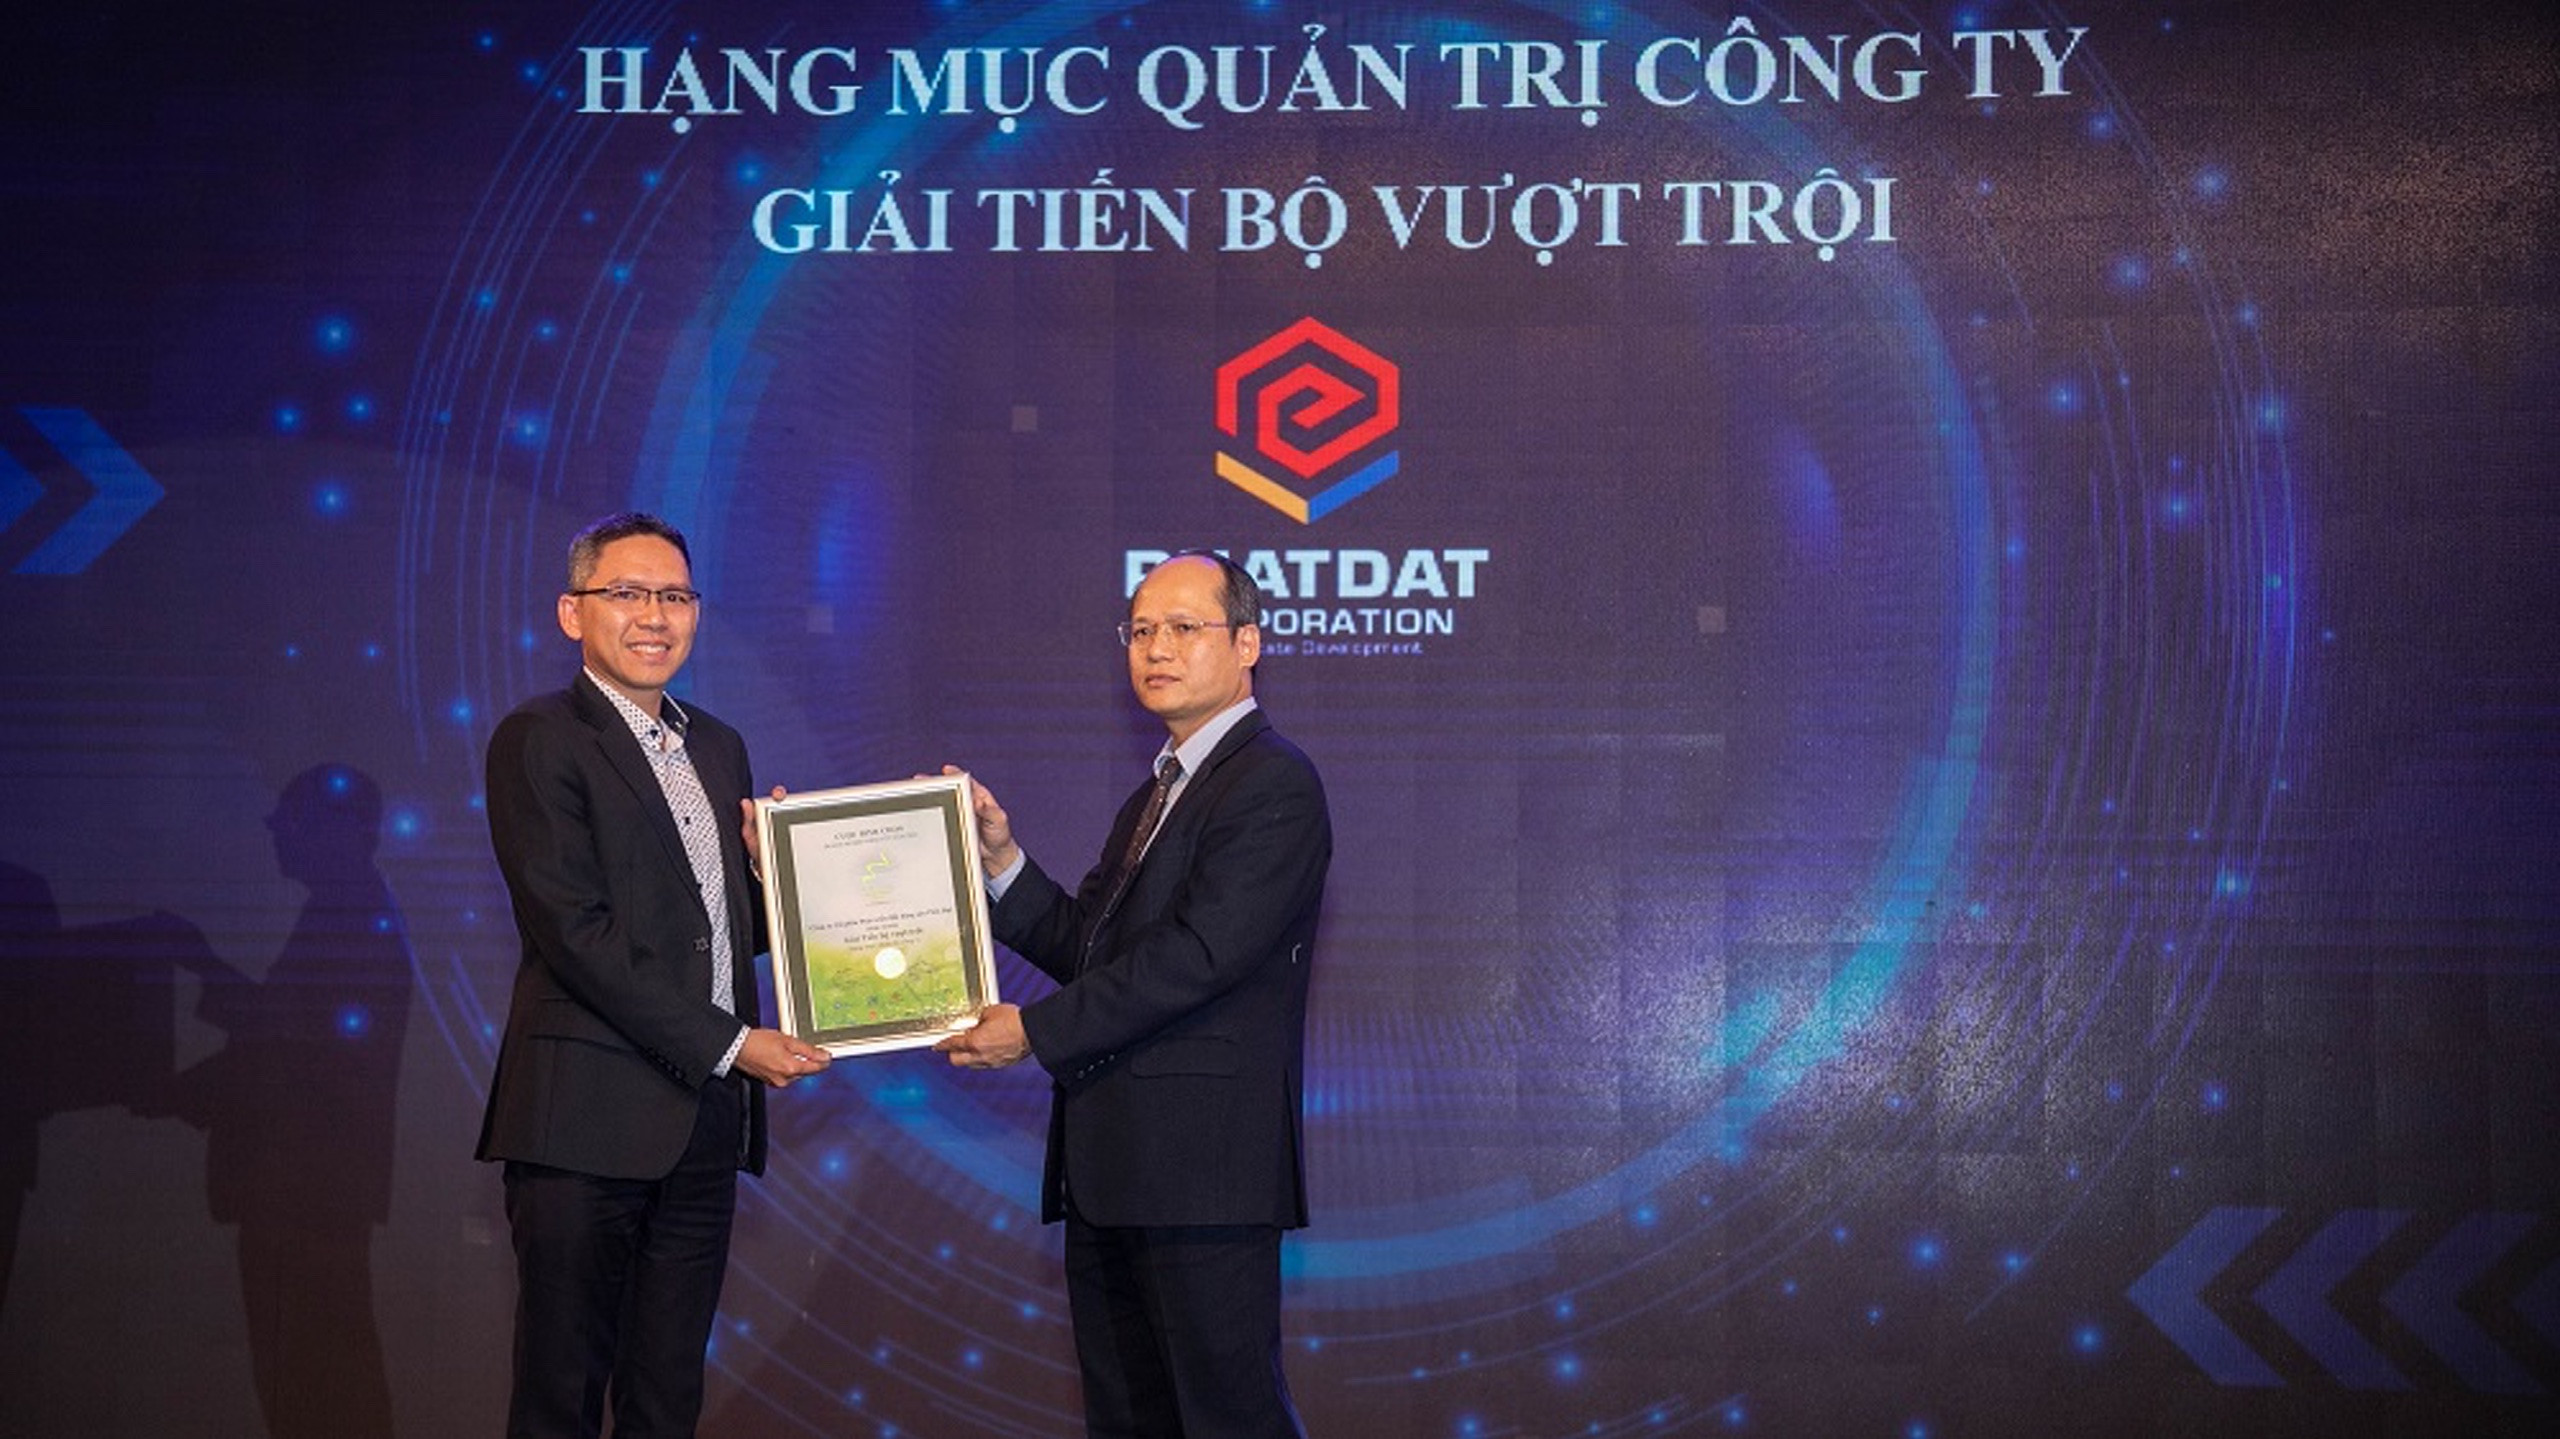 Ông Lê Văn Dũng, Phó Giám đốc Quản lý Đầu tư của PDR nhận giải thưởng.